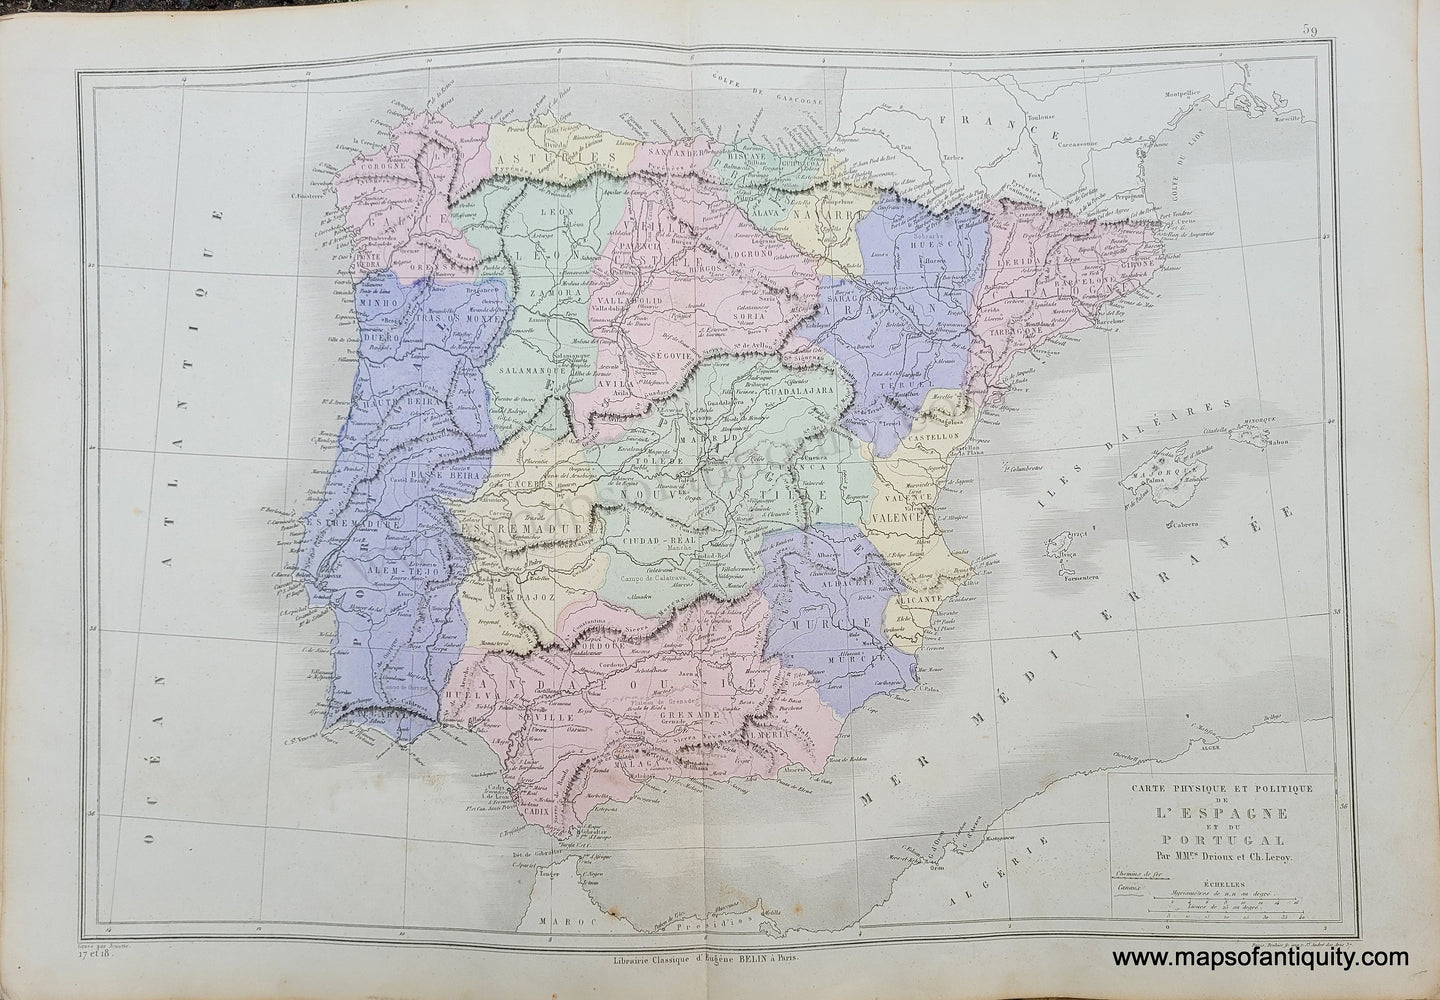 Genuine-Antique-Map-Carte-Physique-et-Politique-de-l'Espange-et-du-Portugal---Physical-and-Political-Map-of-Spain-and-Portugal-1875-Drioux-&-Leroy-EUR2835-Maps-Of-Antiquity